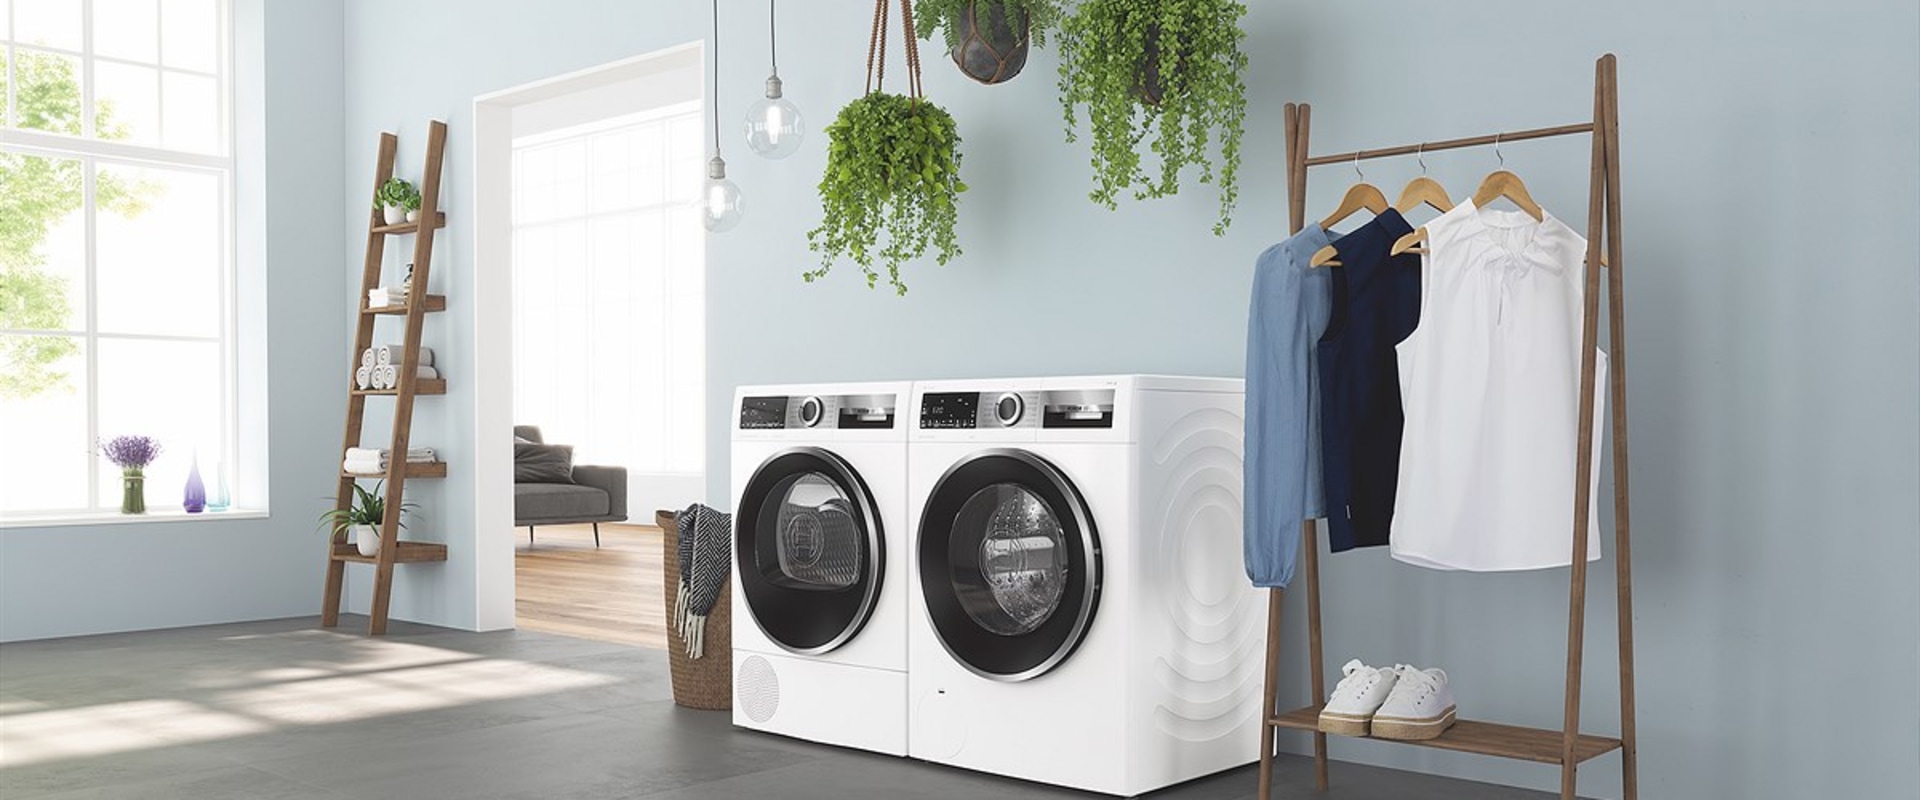 Was sind die Energieeffizienzklassen von Bosch-Waschmaschinen?